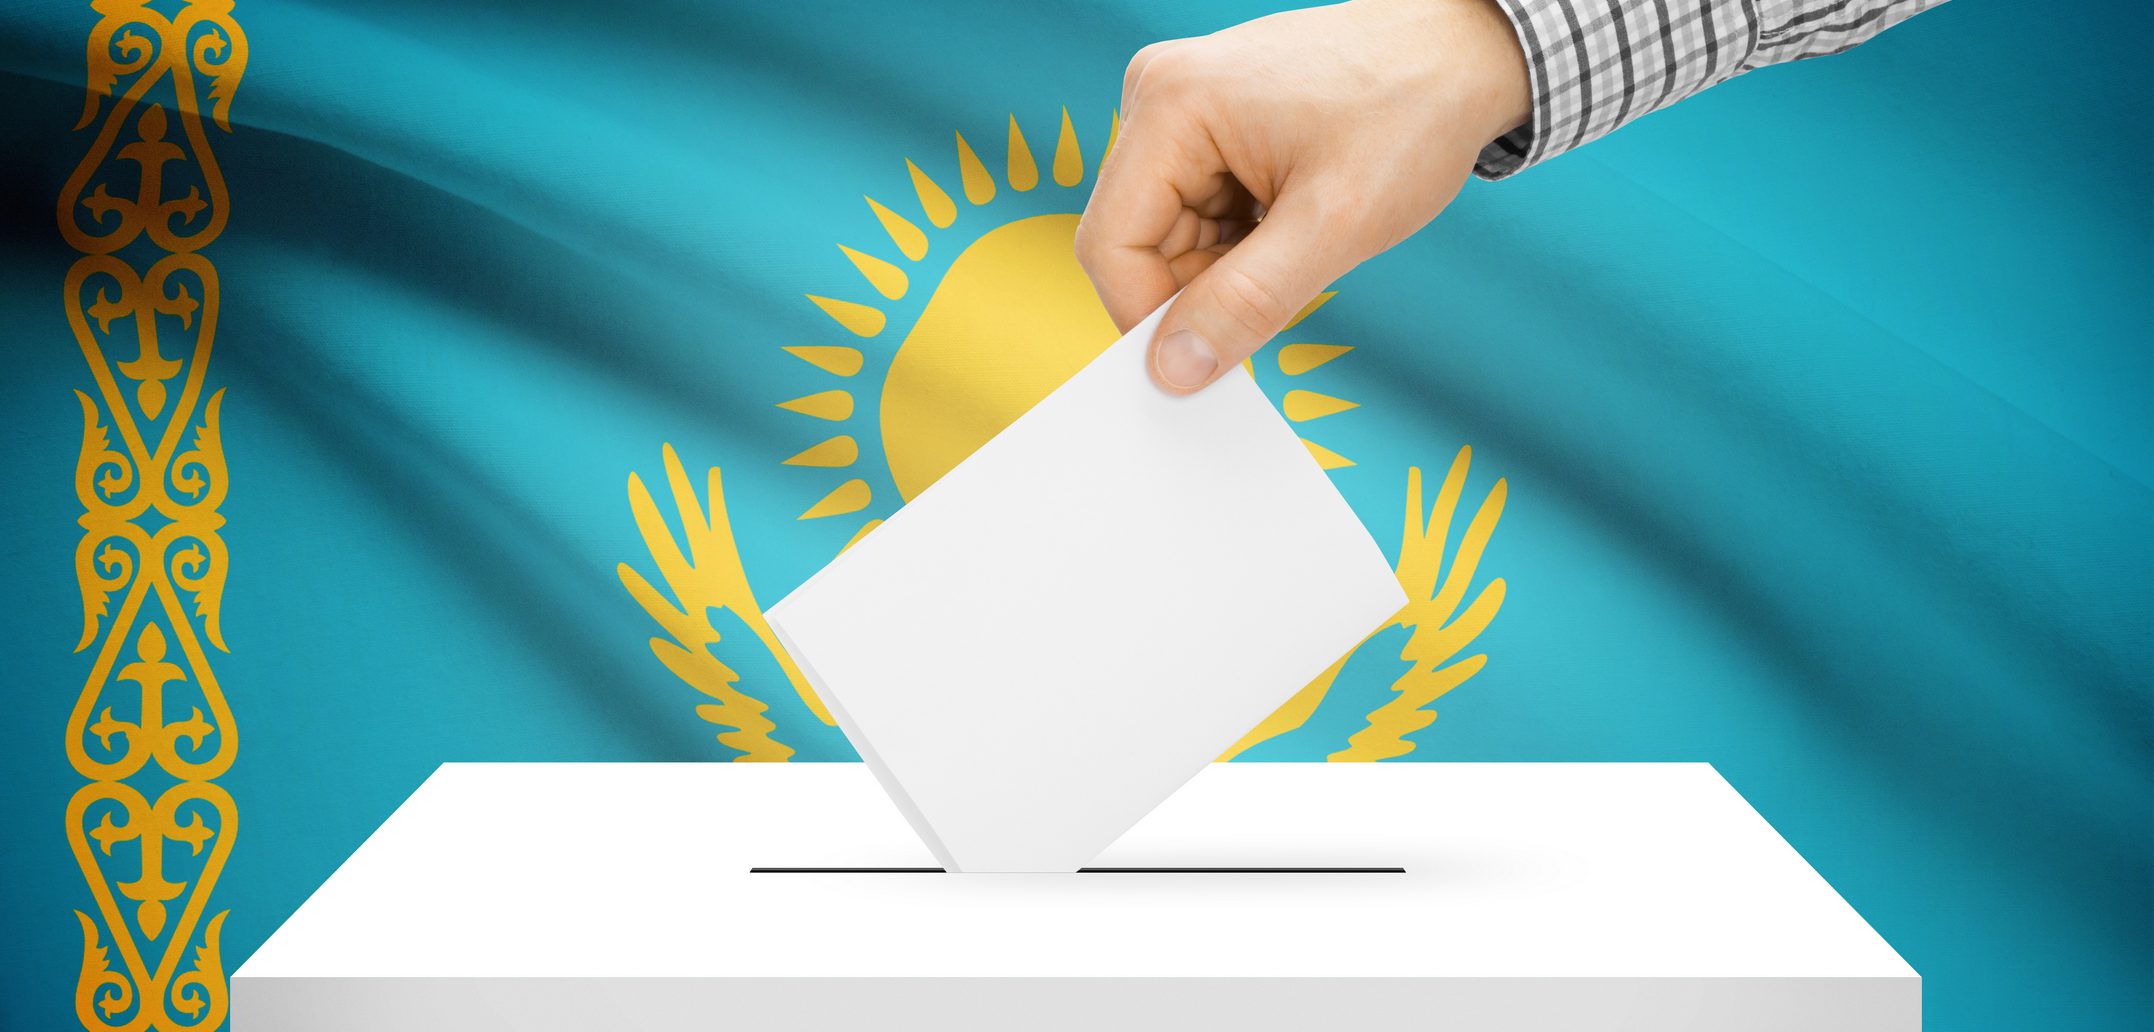 Состоялся  заседания Областной избирательной комиссии о ходе подготовки и проведению выборов   депутатов Сената Парламента Республики Казахстан,   назначенных на 14 января 2023 года.